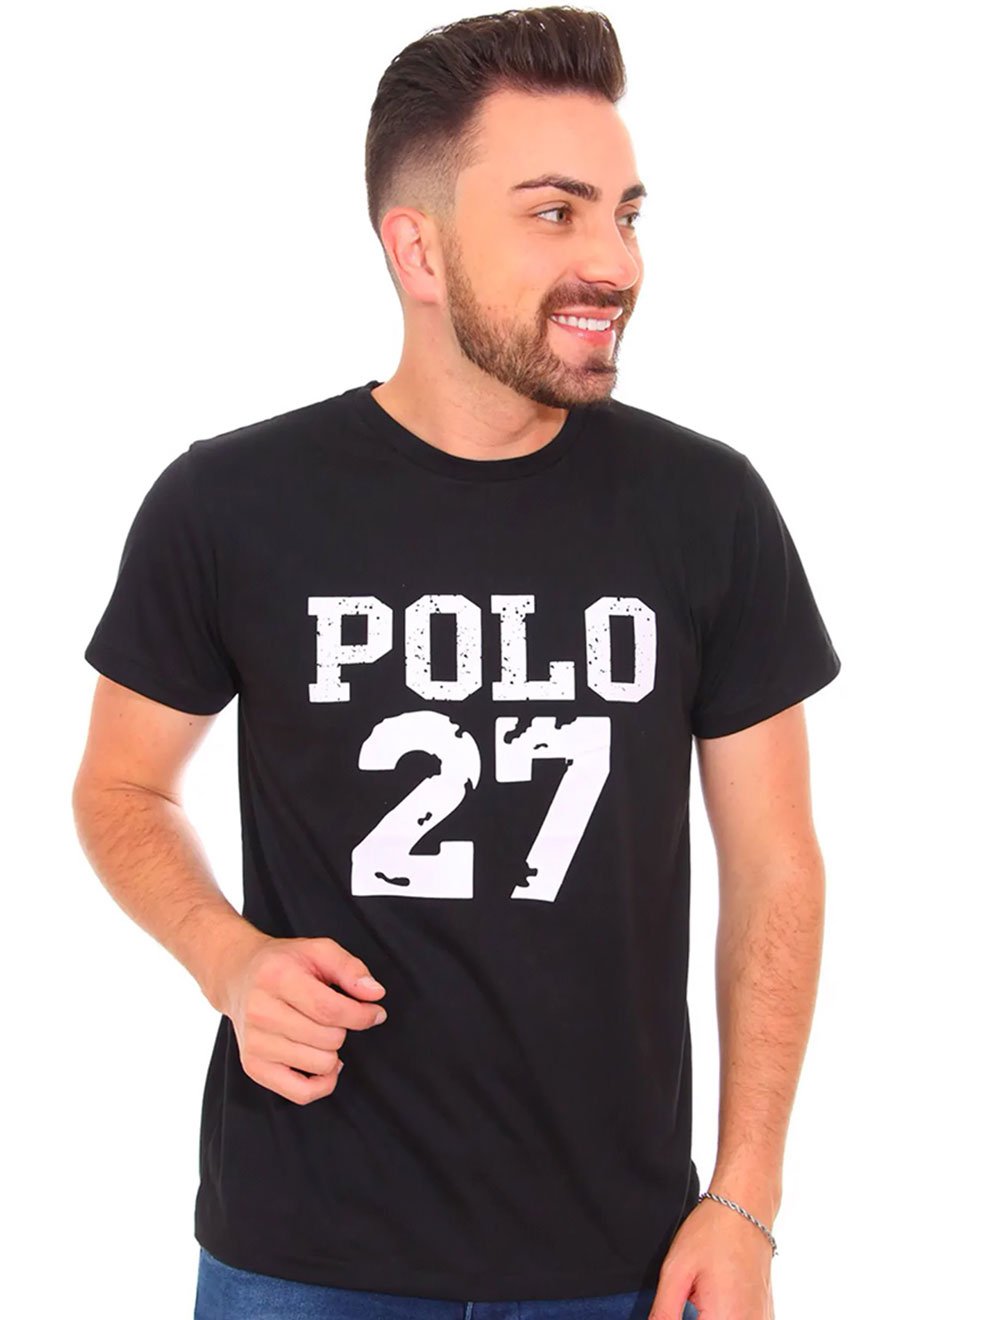 Camiseta Ralph Lauren Masculina Polo 27 Preta